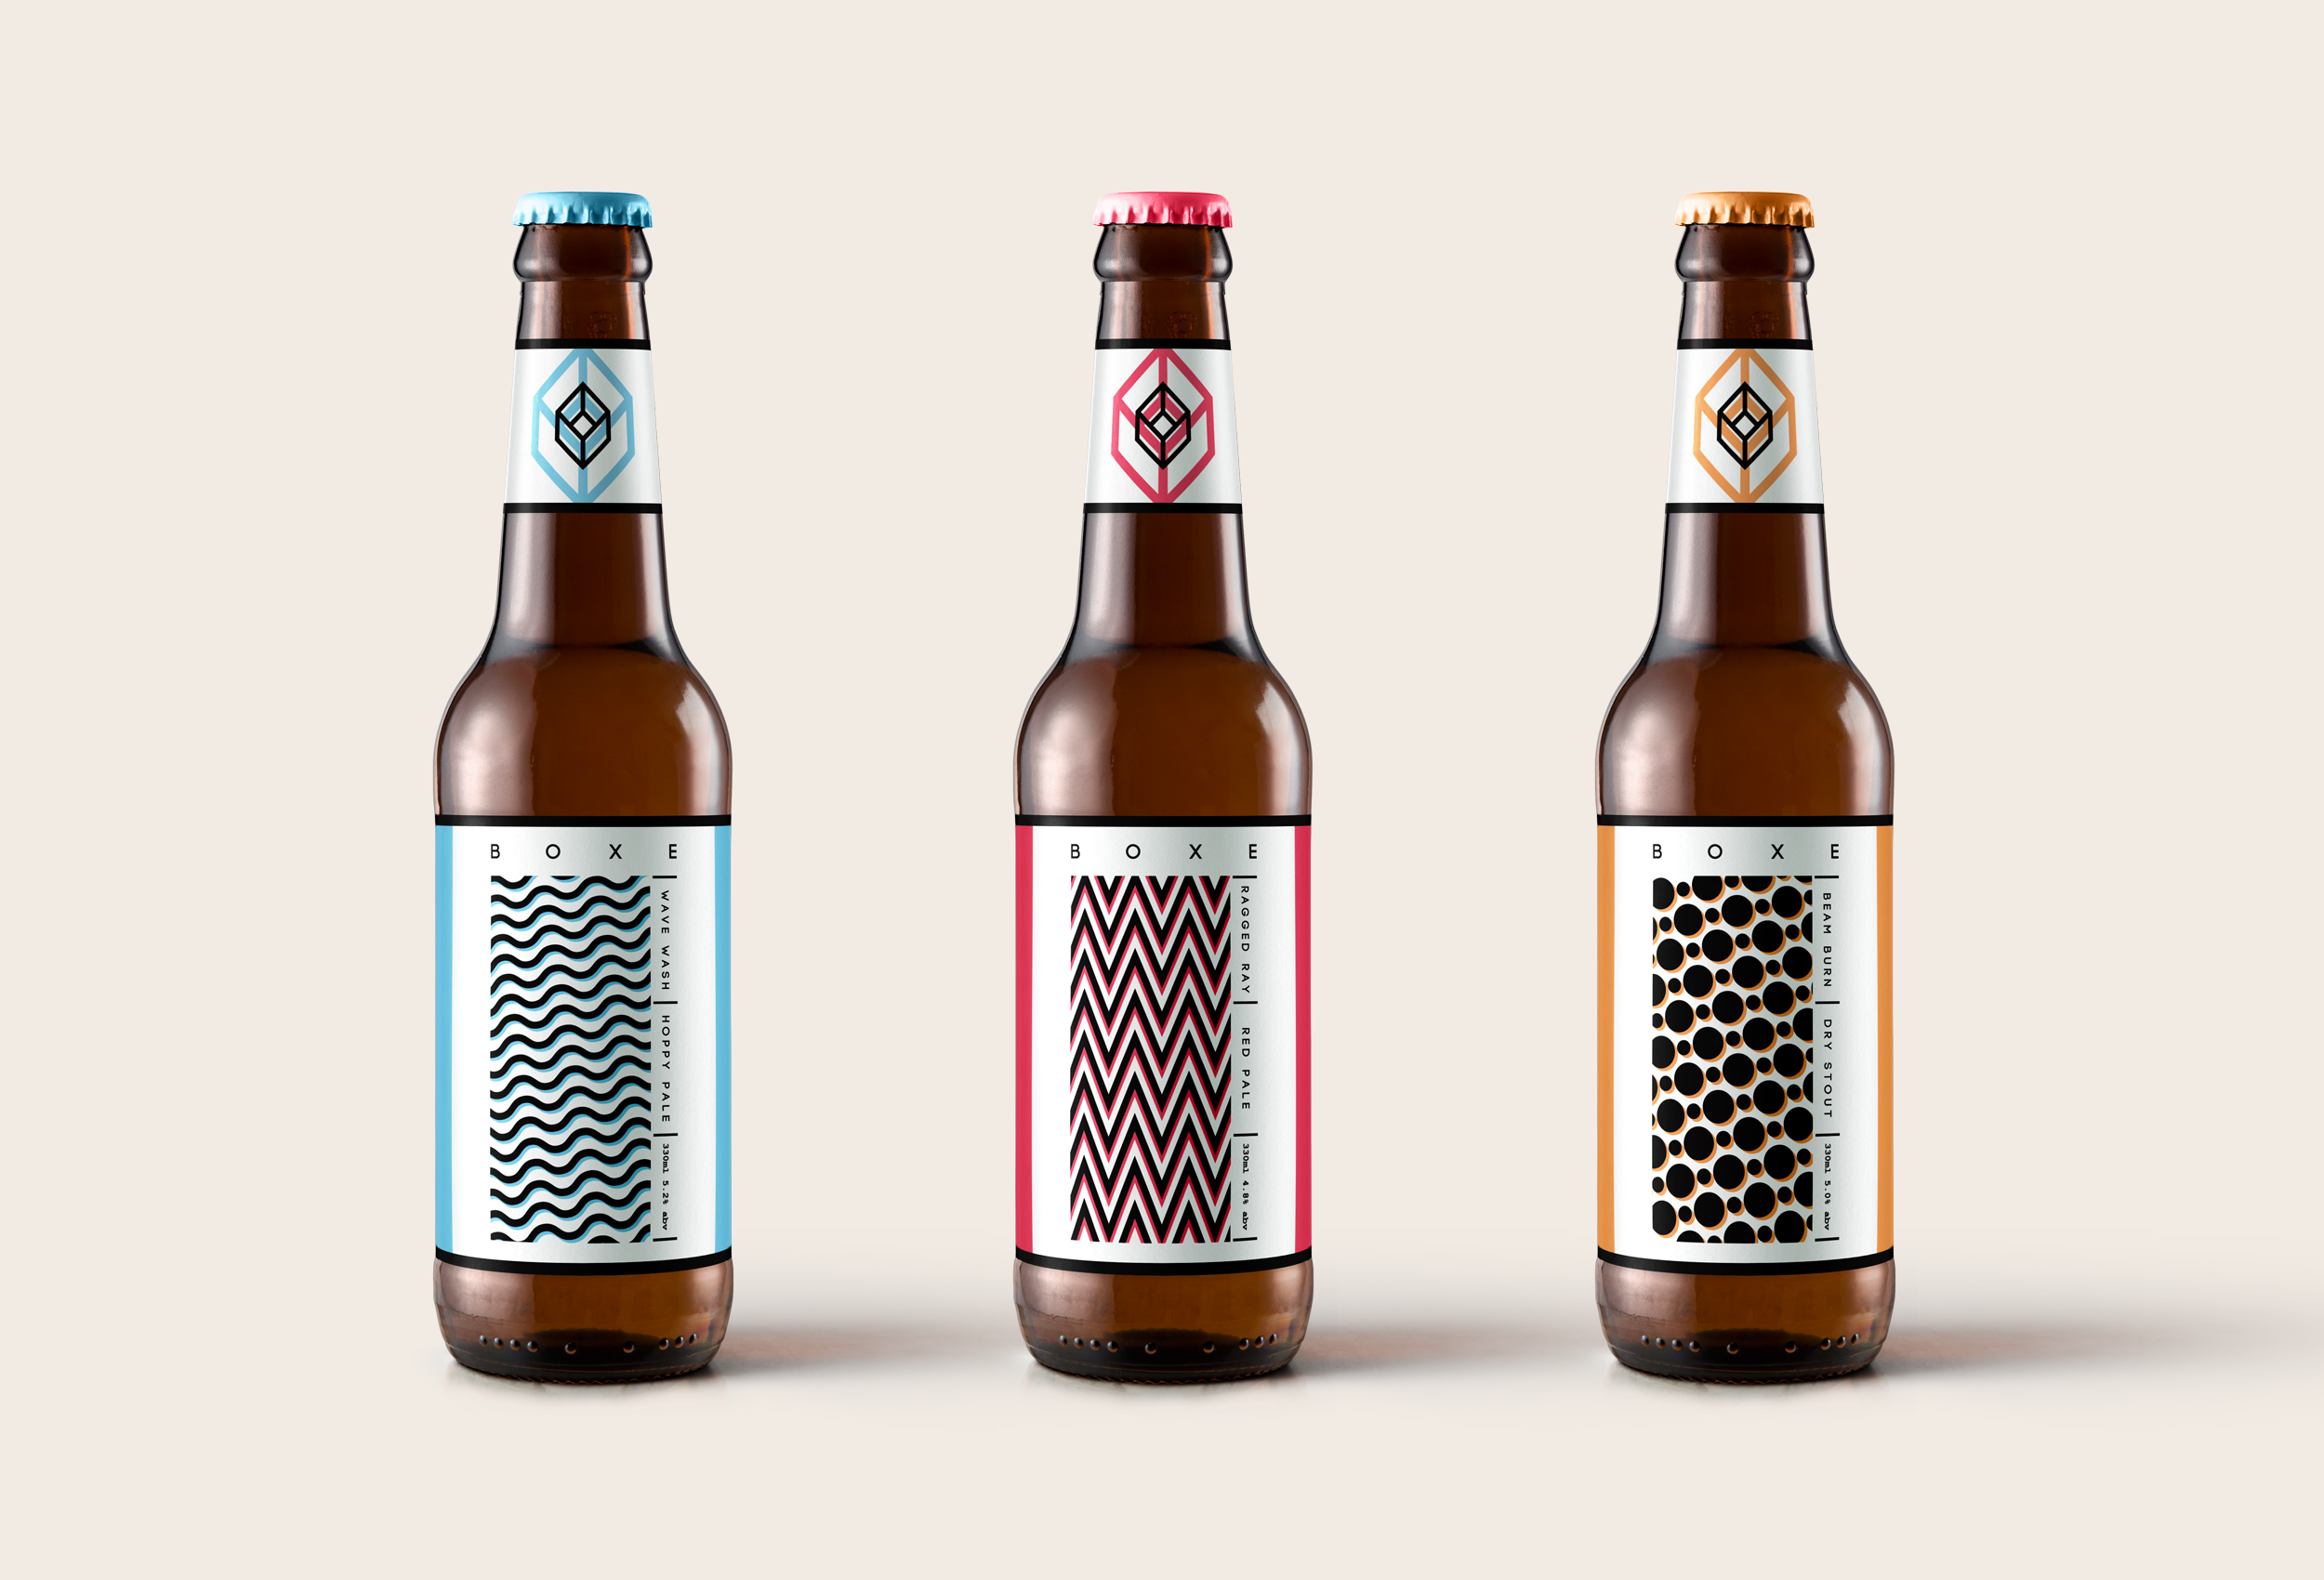 Boxe Beer bottle packaging designs.